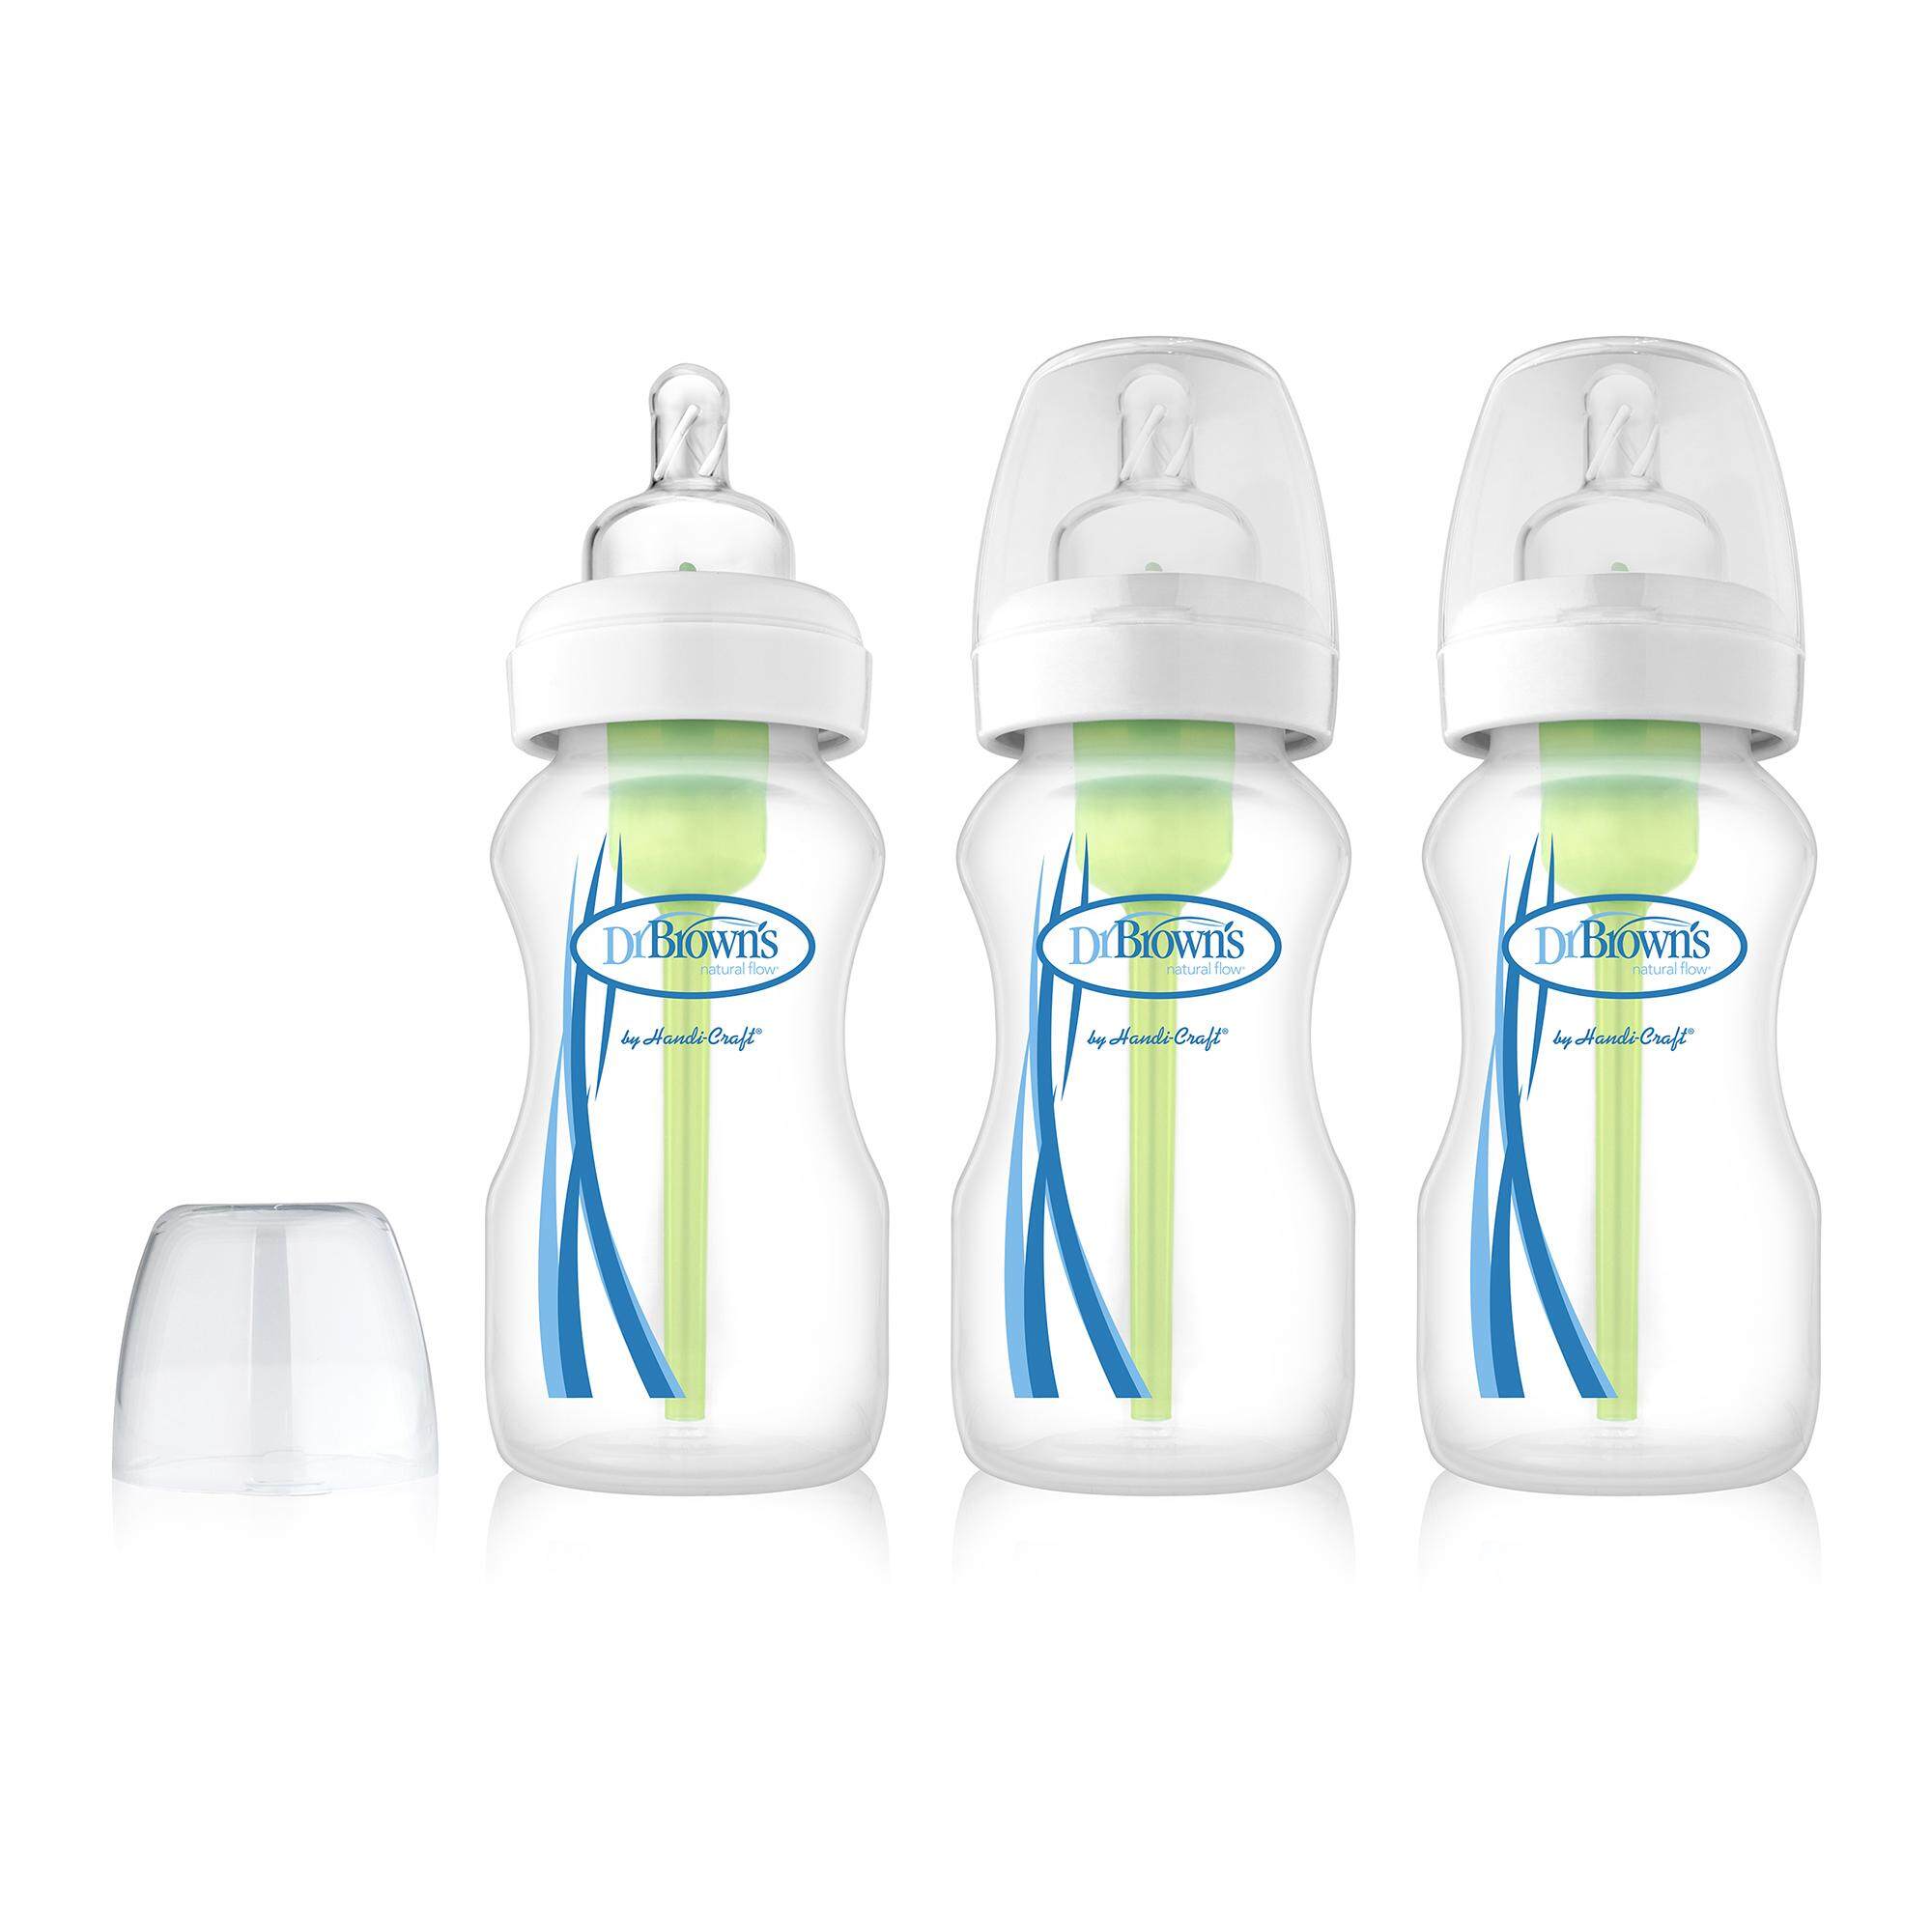 ราคา Dr.Brown's : DRBWB93005-GBX ขวดนม 9 oz / 270 ml PP Wide-Neck "Options" Baby Bottle, 3-Pack